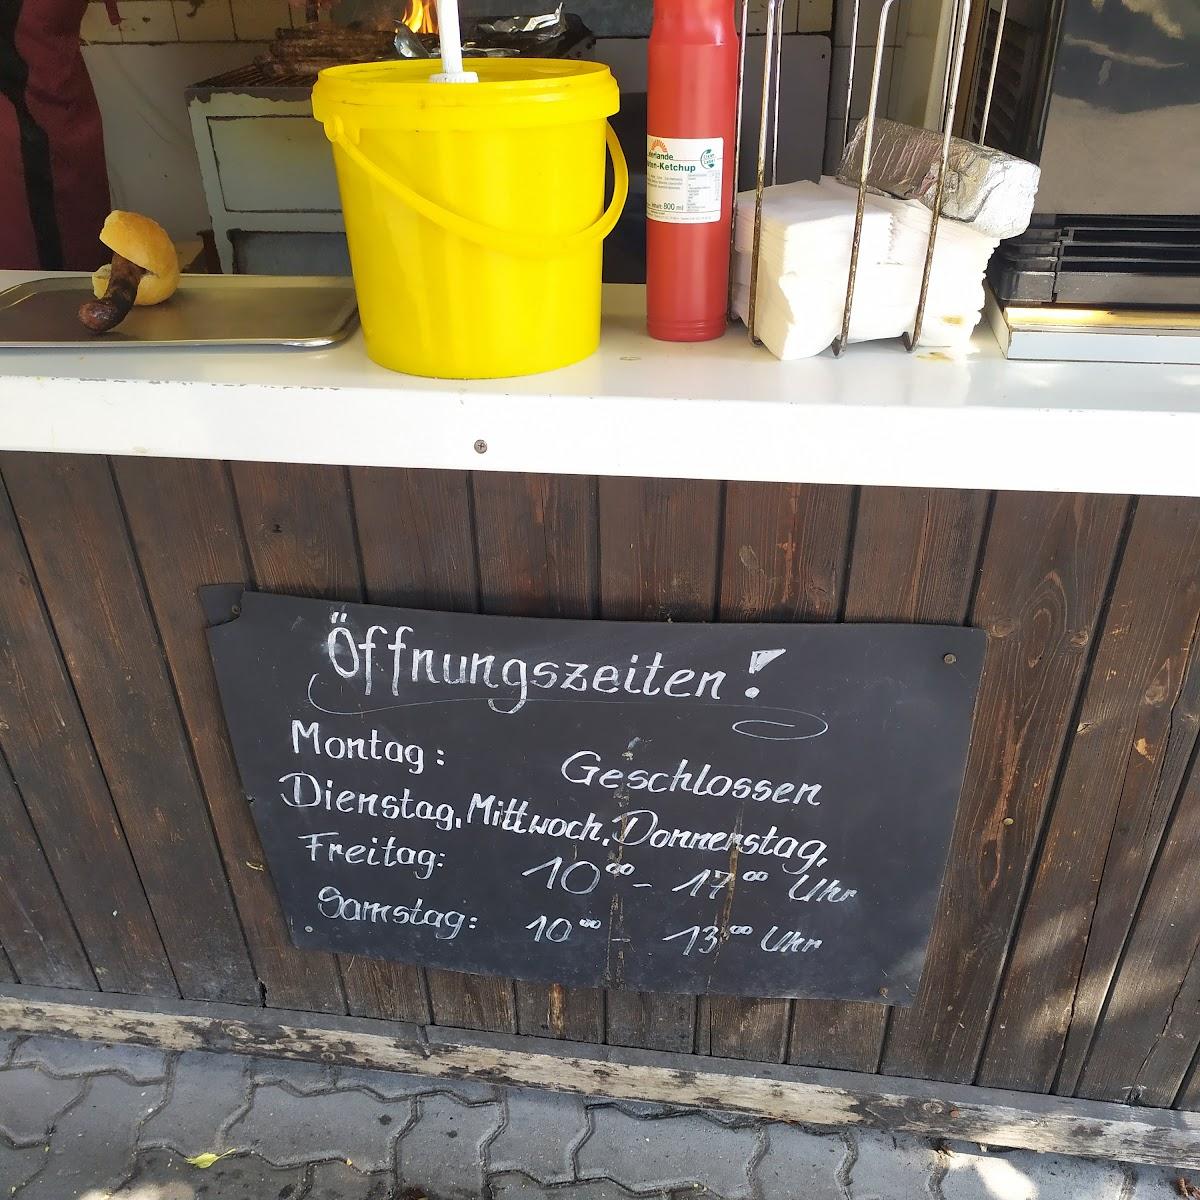 Restaurant "er Rostbratwürste" in Sonnefeld